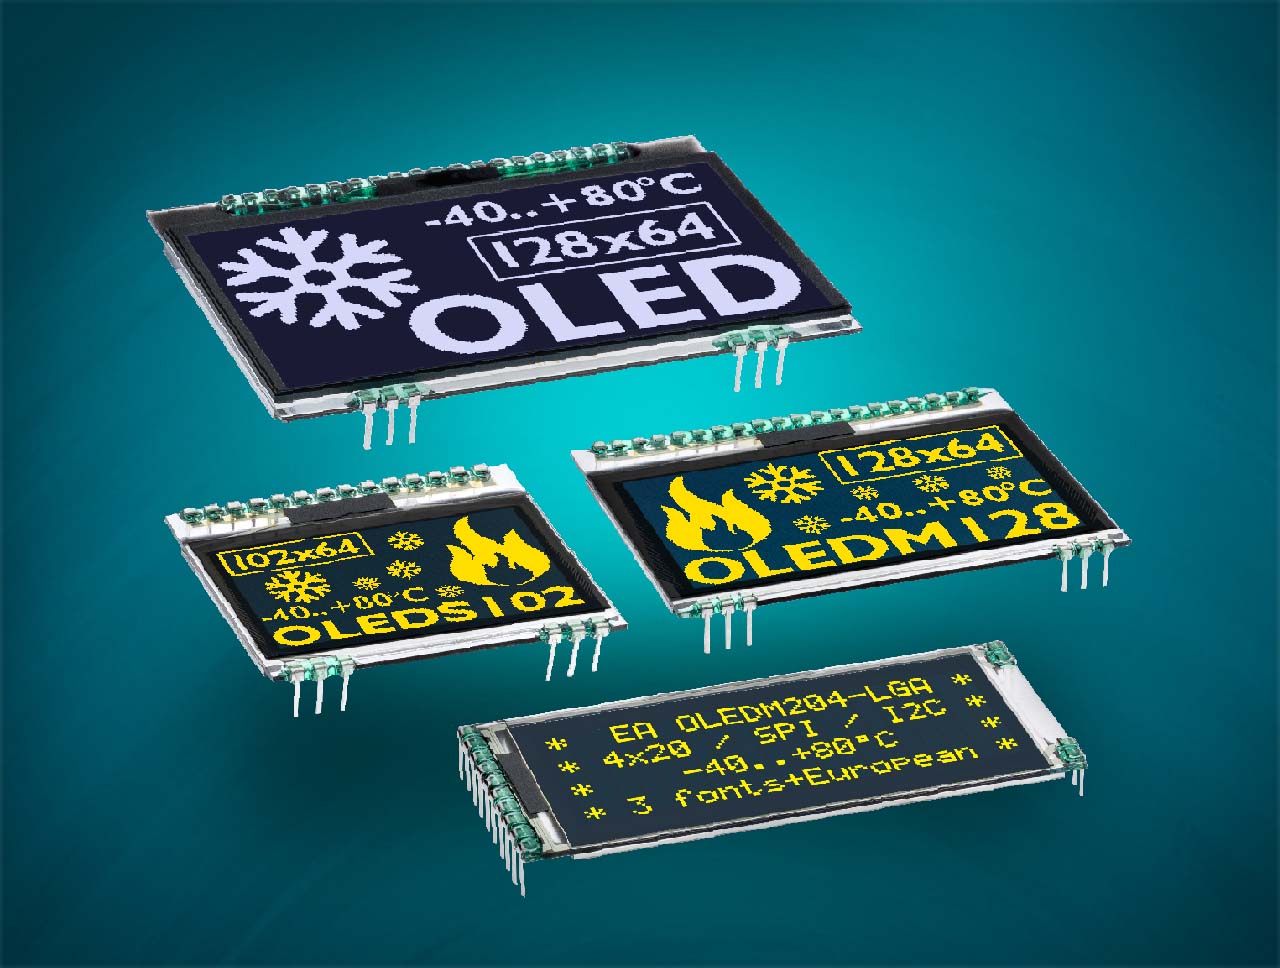 OLED Display als Anzeige für Text und Grafik mit SPI für 3,3V modern, innovative und intelligent